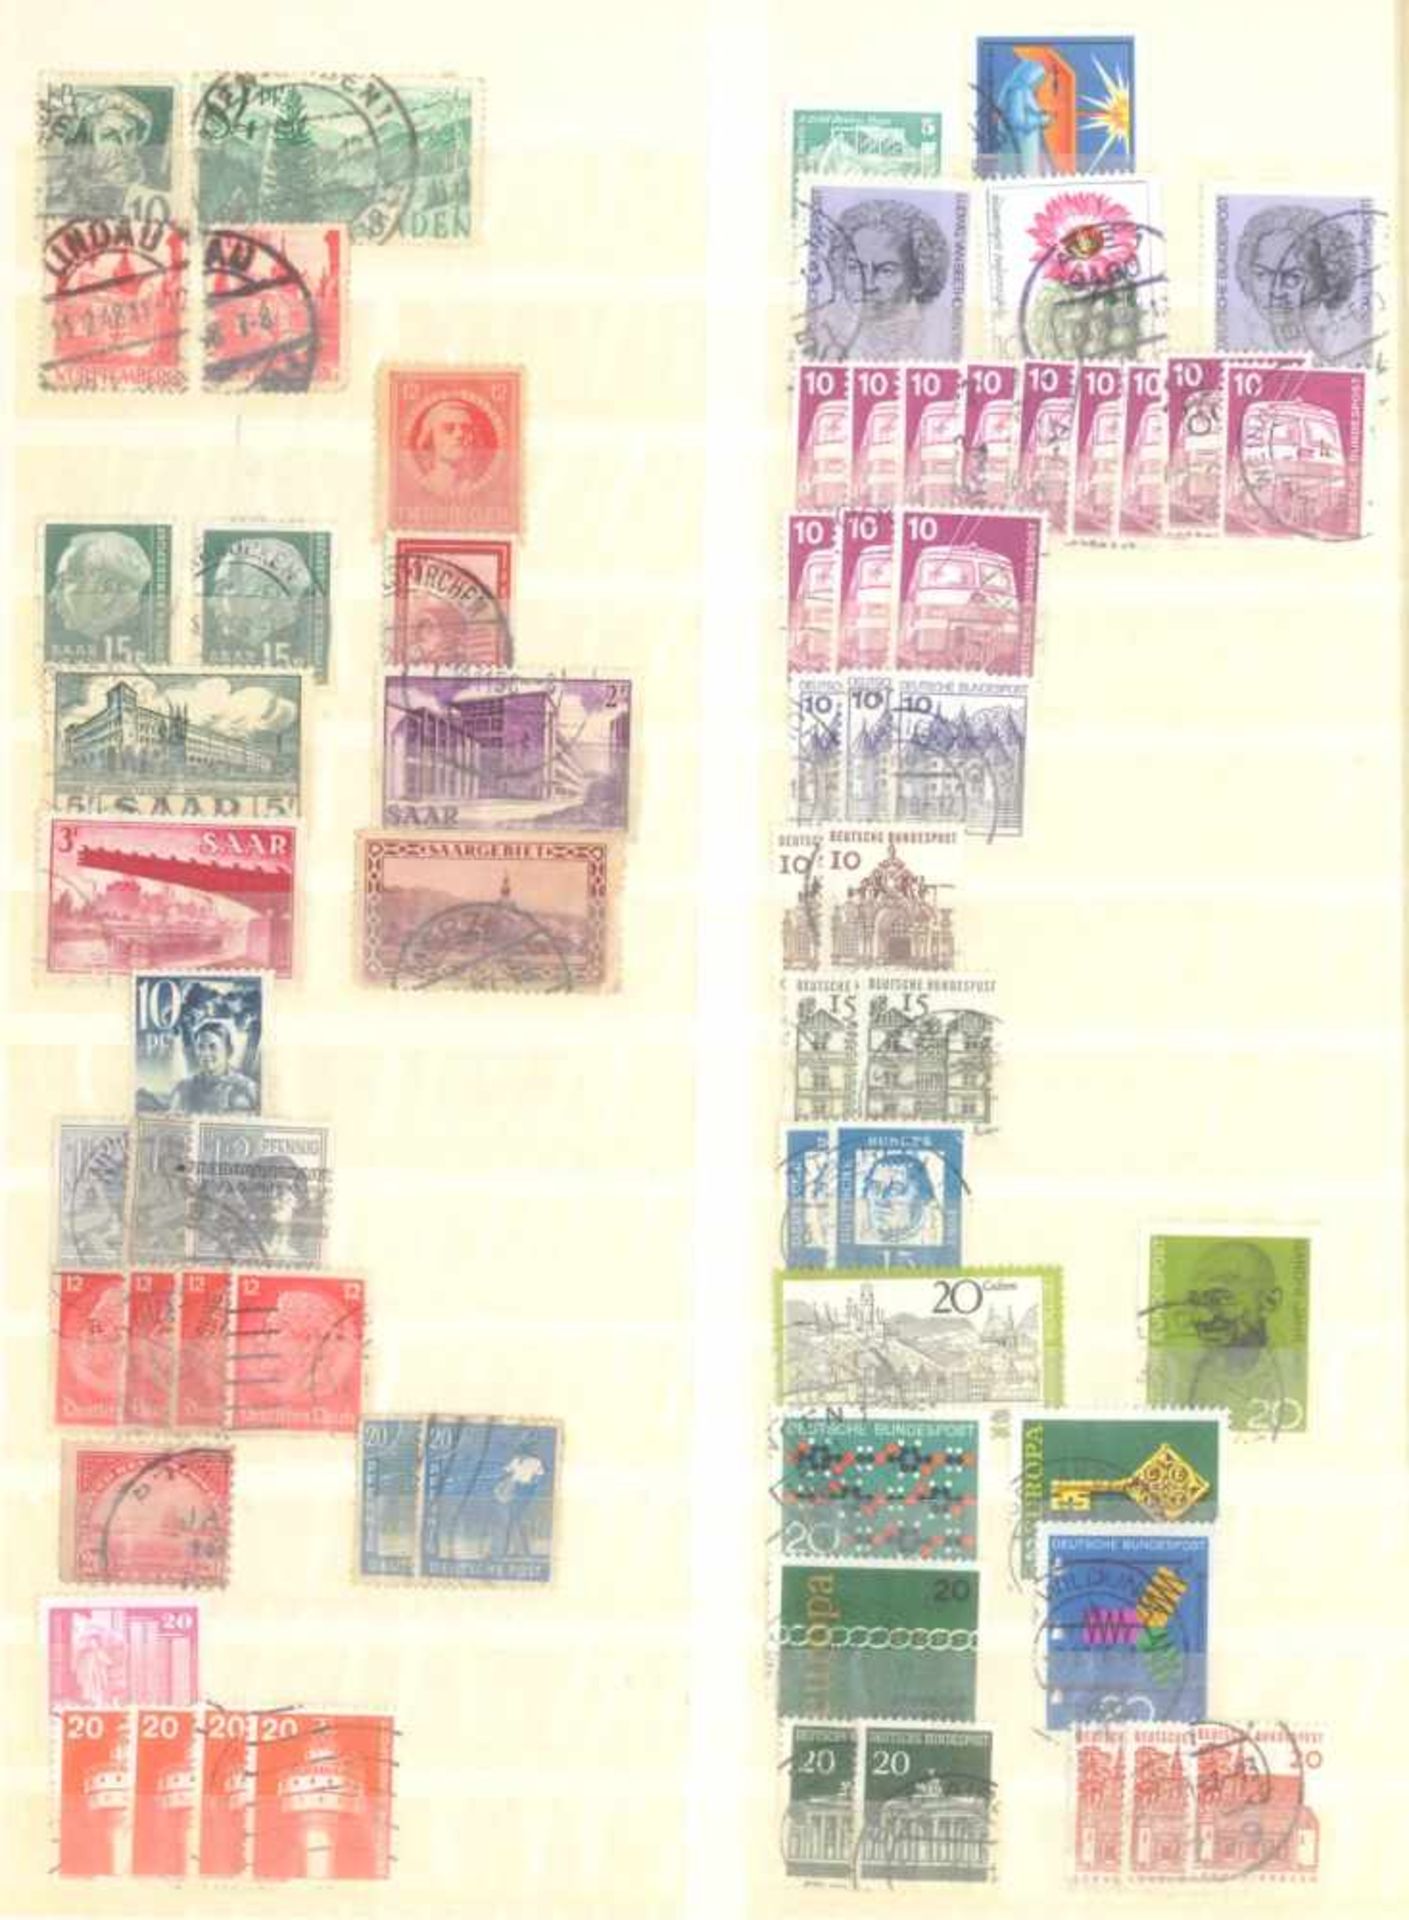 Kleiner Briefmarkennachlass Alle WeltIn 5 Steckalben, gestempelte Marken der BRD, Berlin, etwas - Bild 2 aus 12